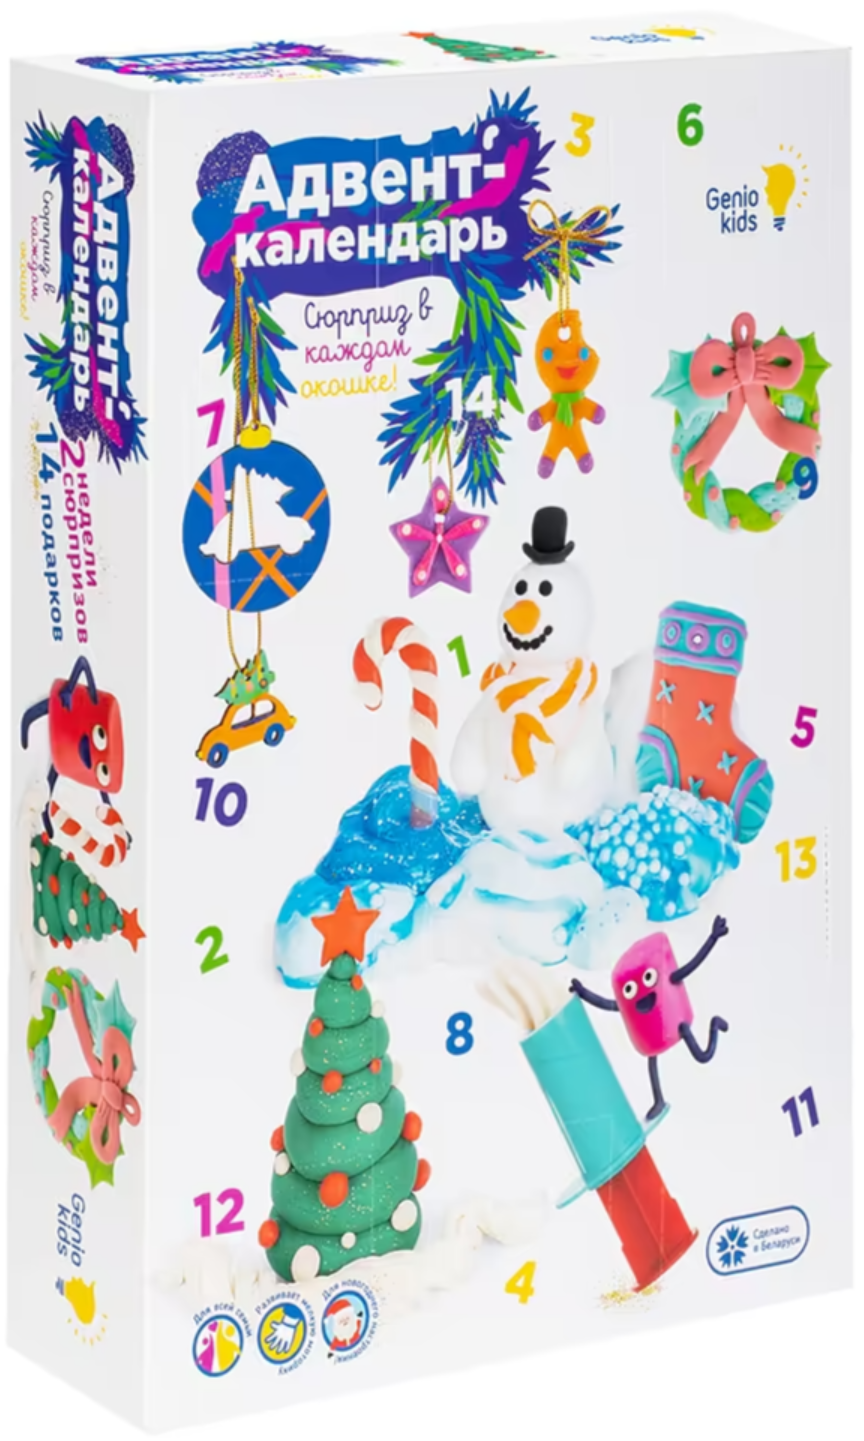 Набор для детского творчества Genio Kids Адвент-календарь TA1819